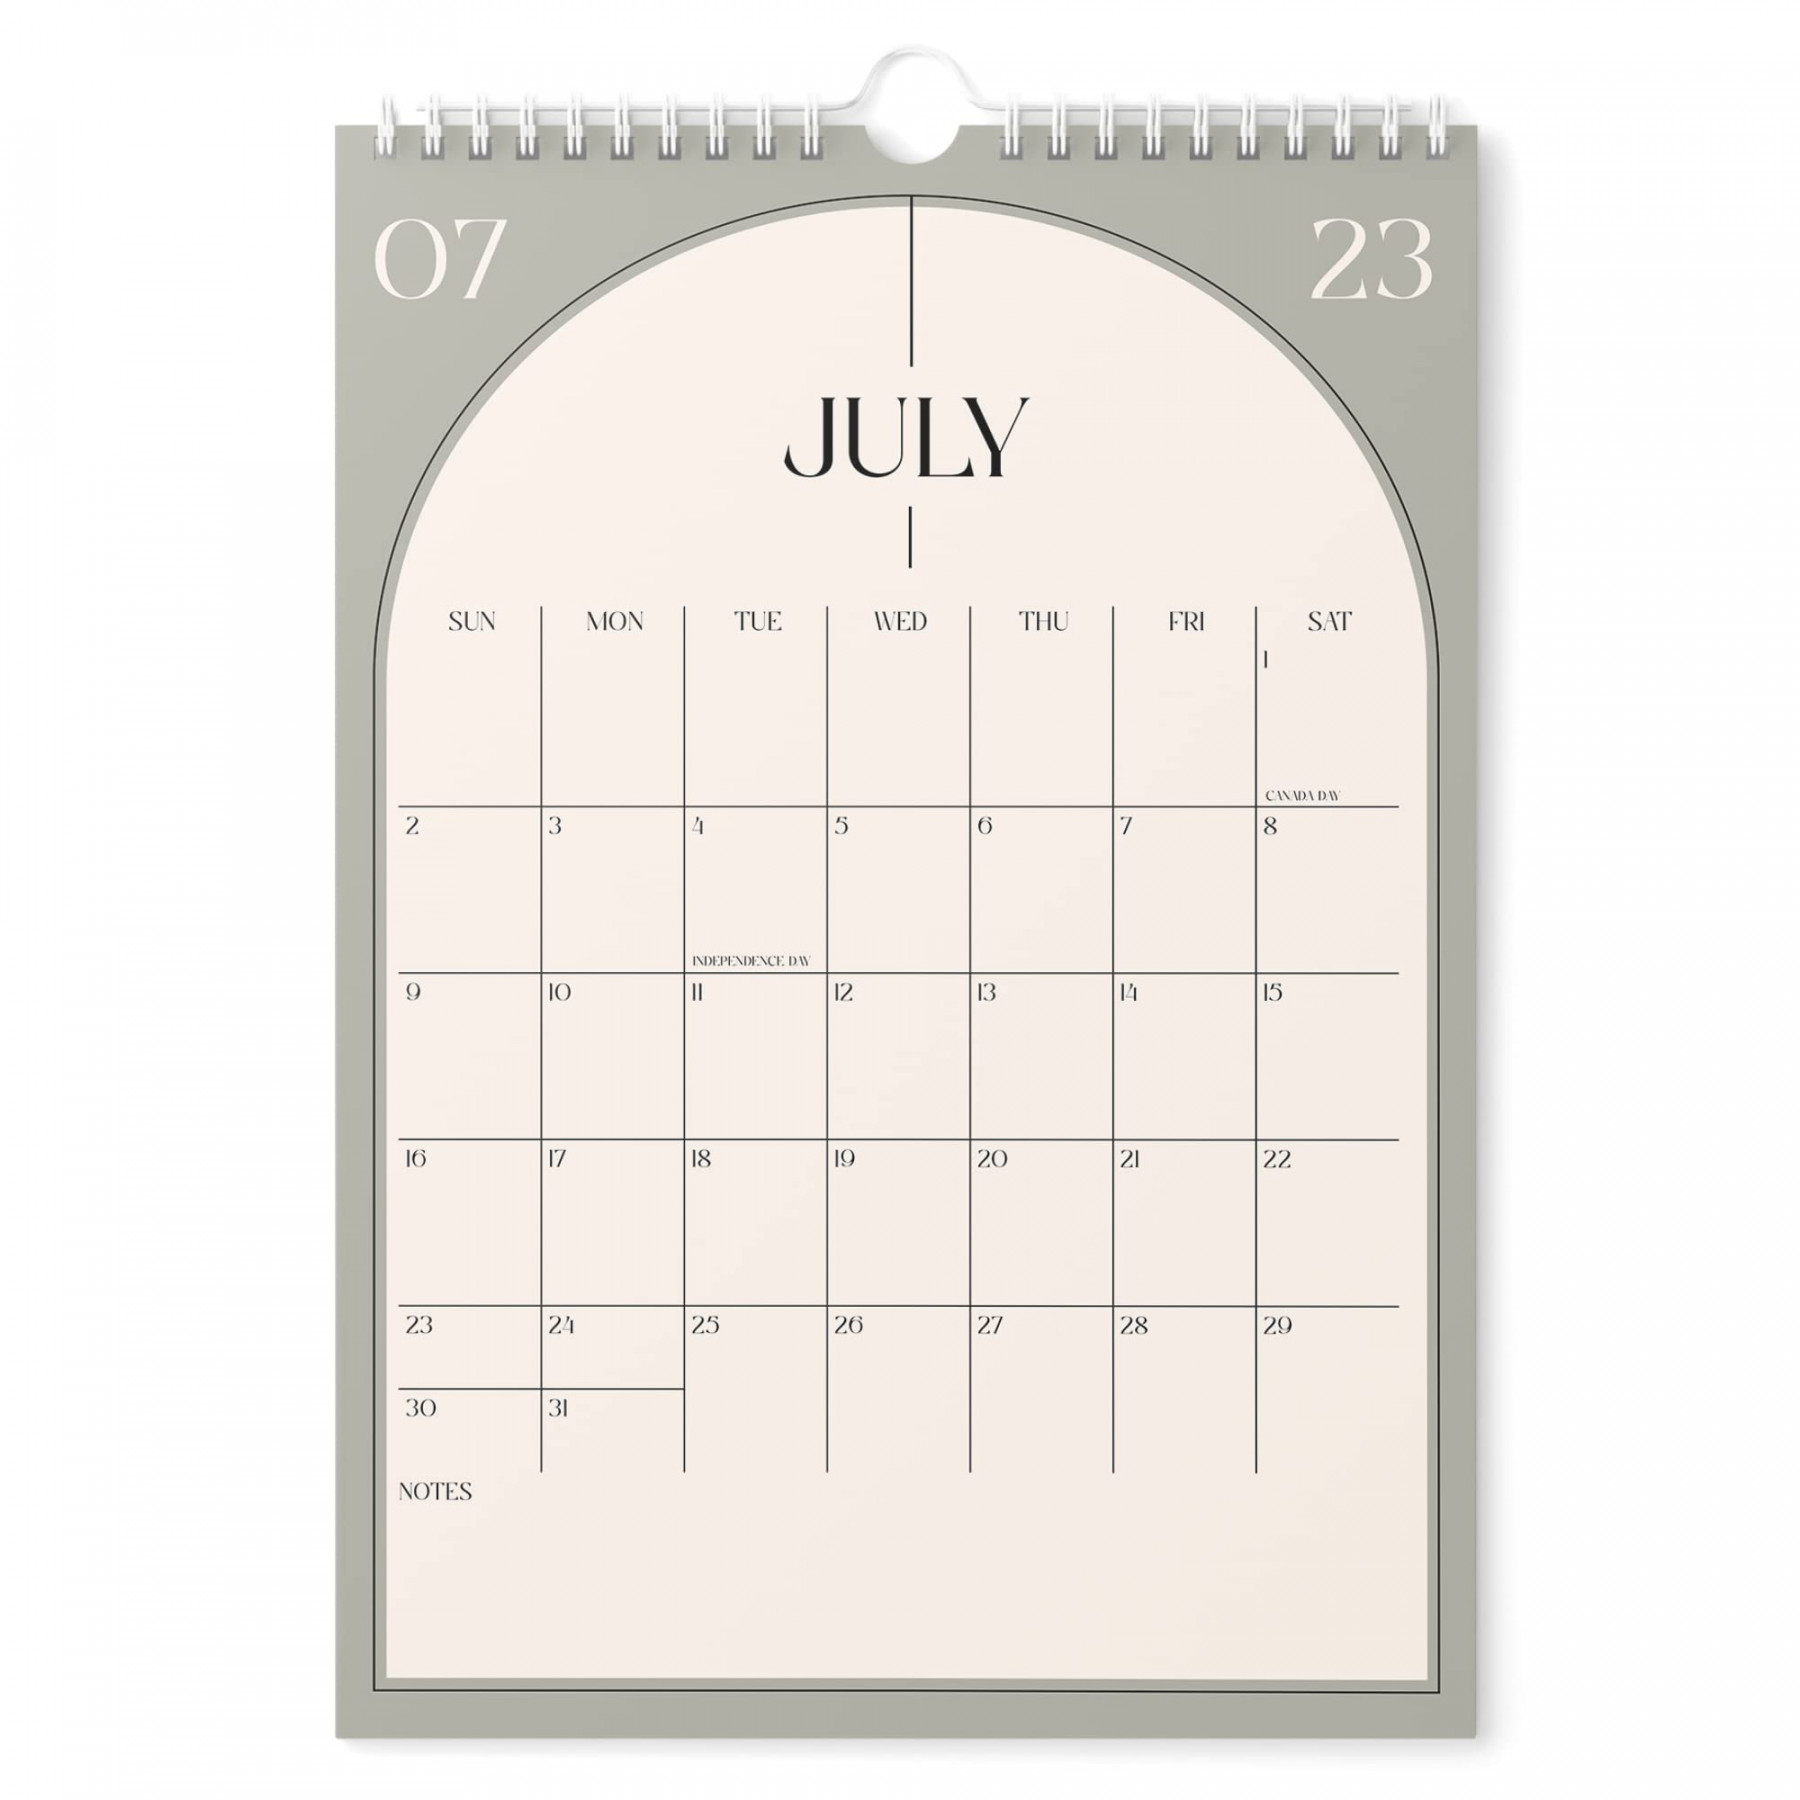 Calendar - - Vertical x  Wall Calendar Runs Until December  20 - Easy Planning with tSee more Calendar - - Vertical x